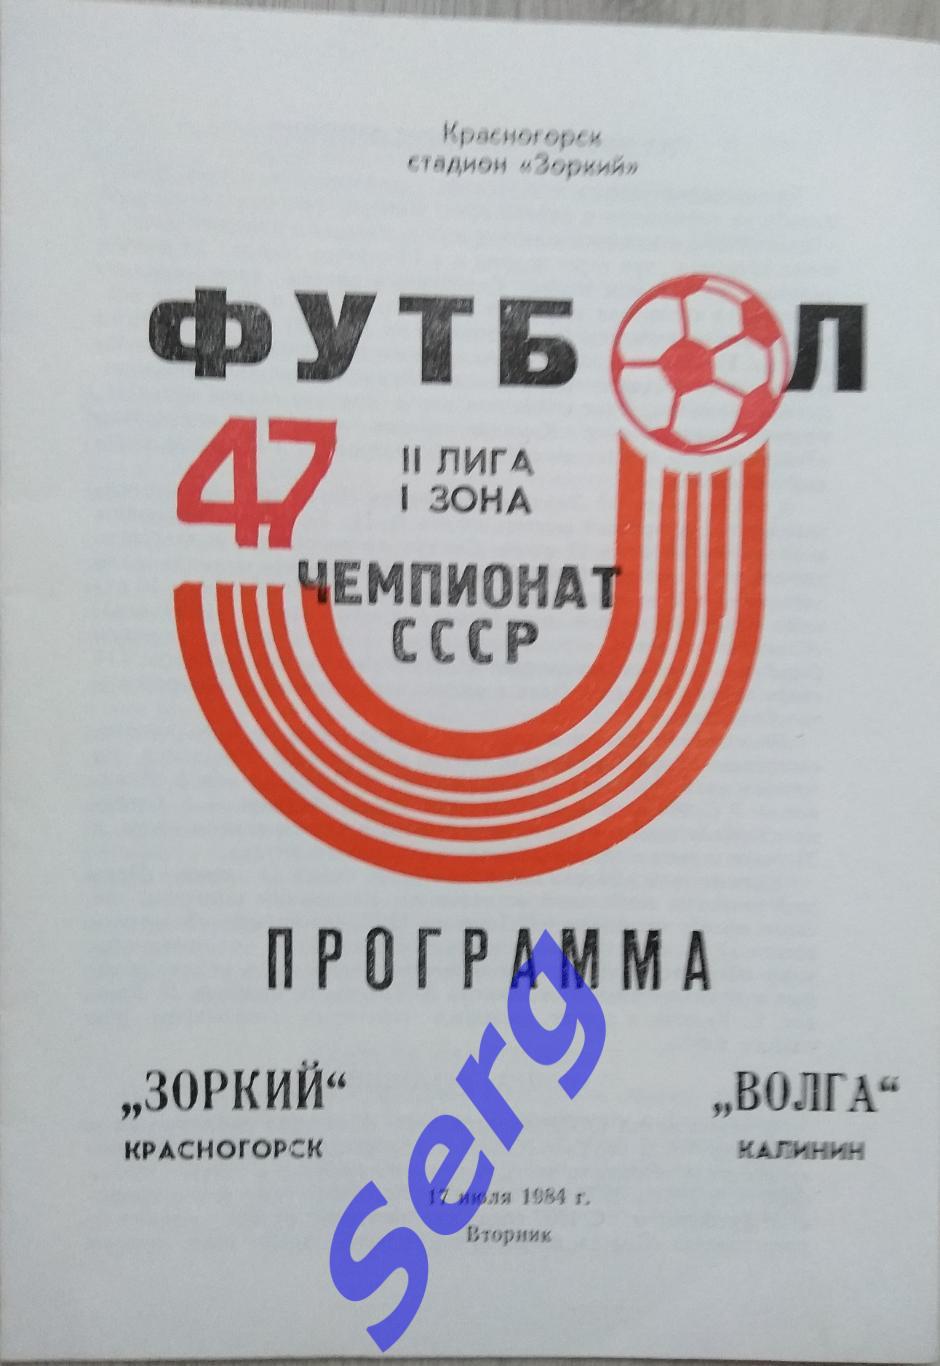 Зоркий Красногорск - Волга Калинин - 17 июля 1984 год